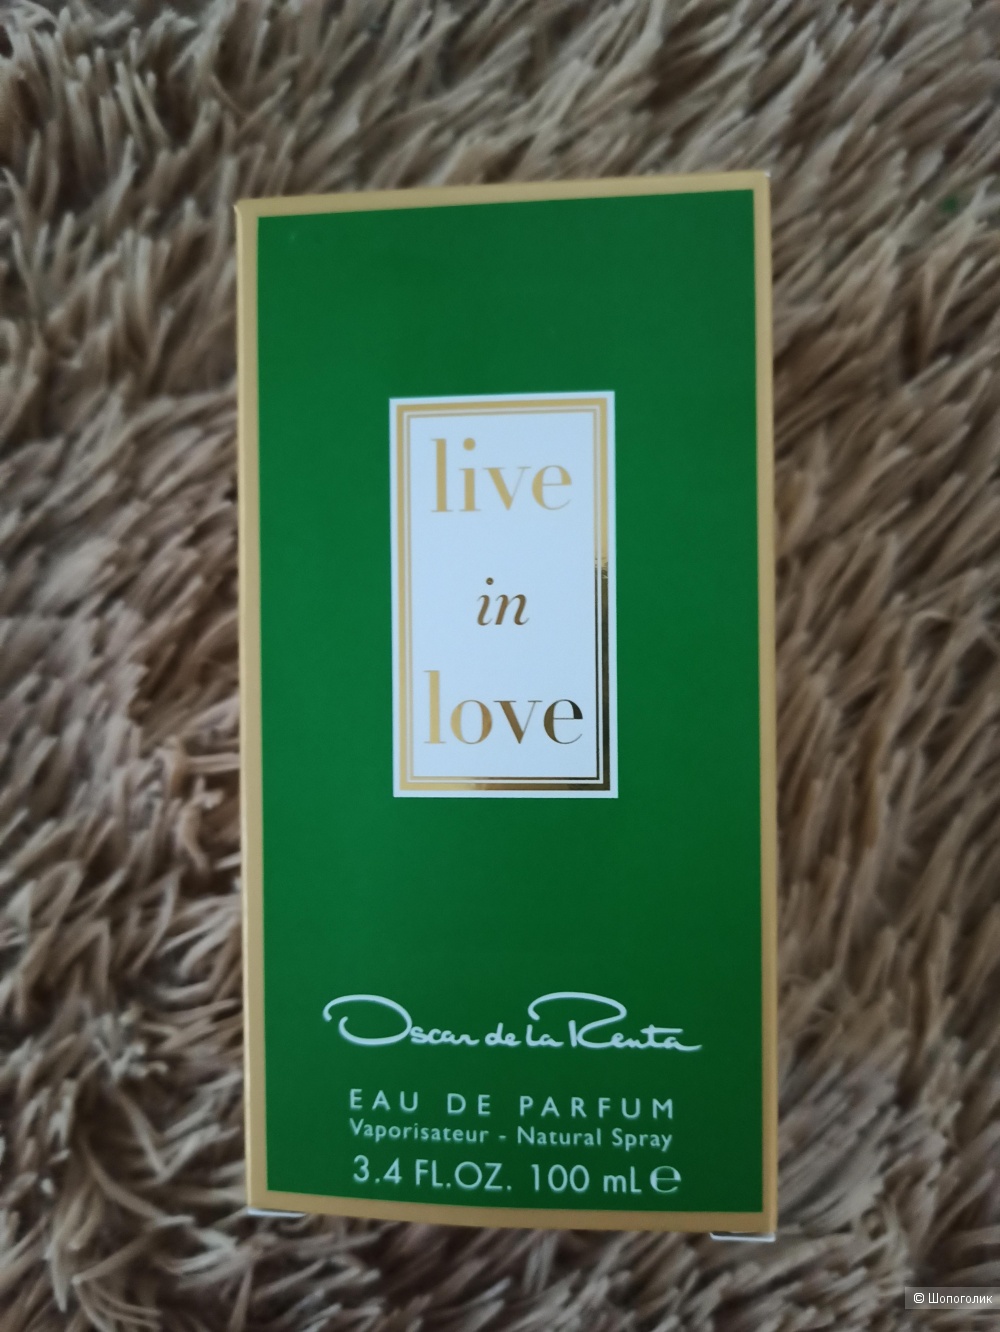 Парфюмированая вода Live in love от Oscar de la Renta,100 ml